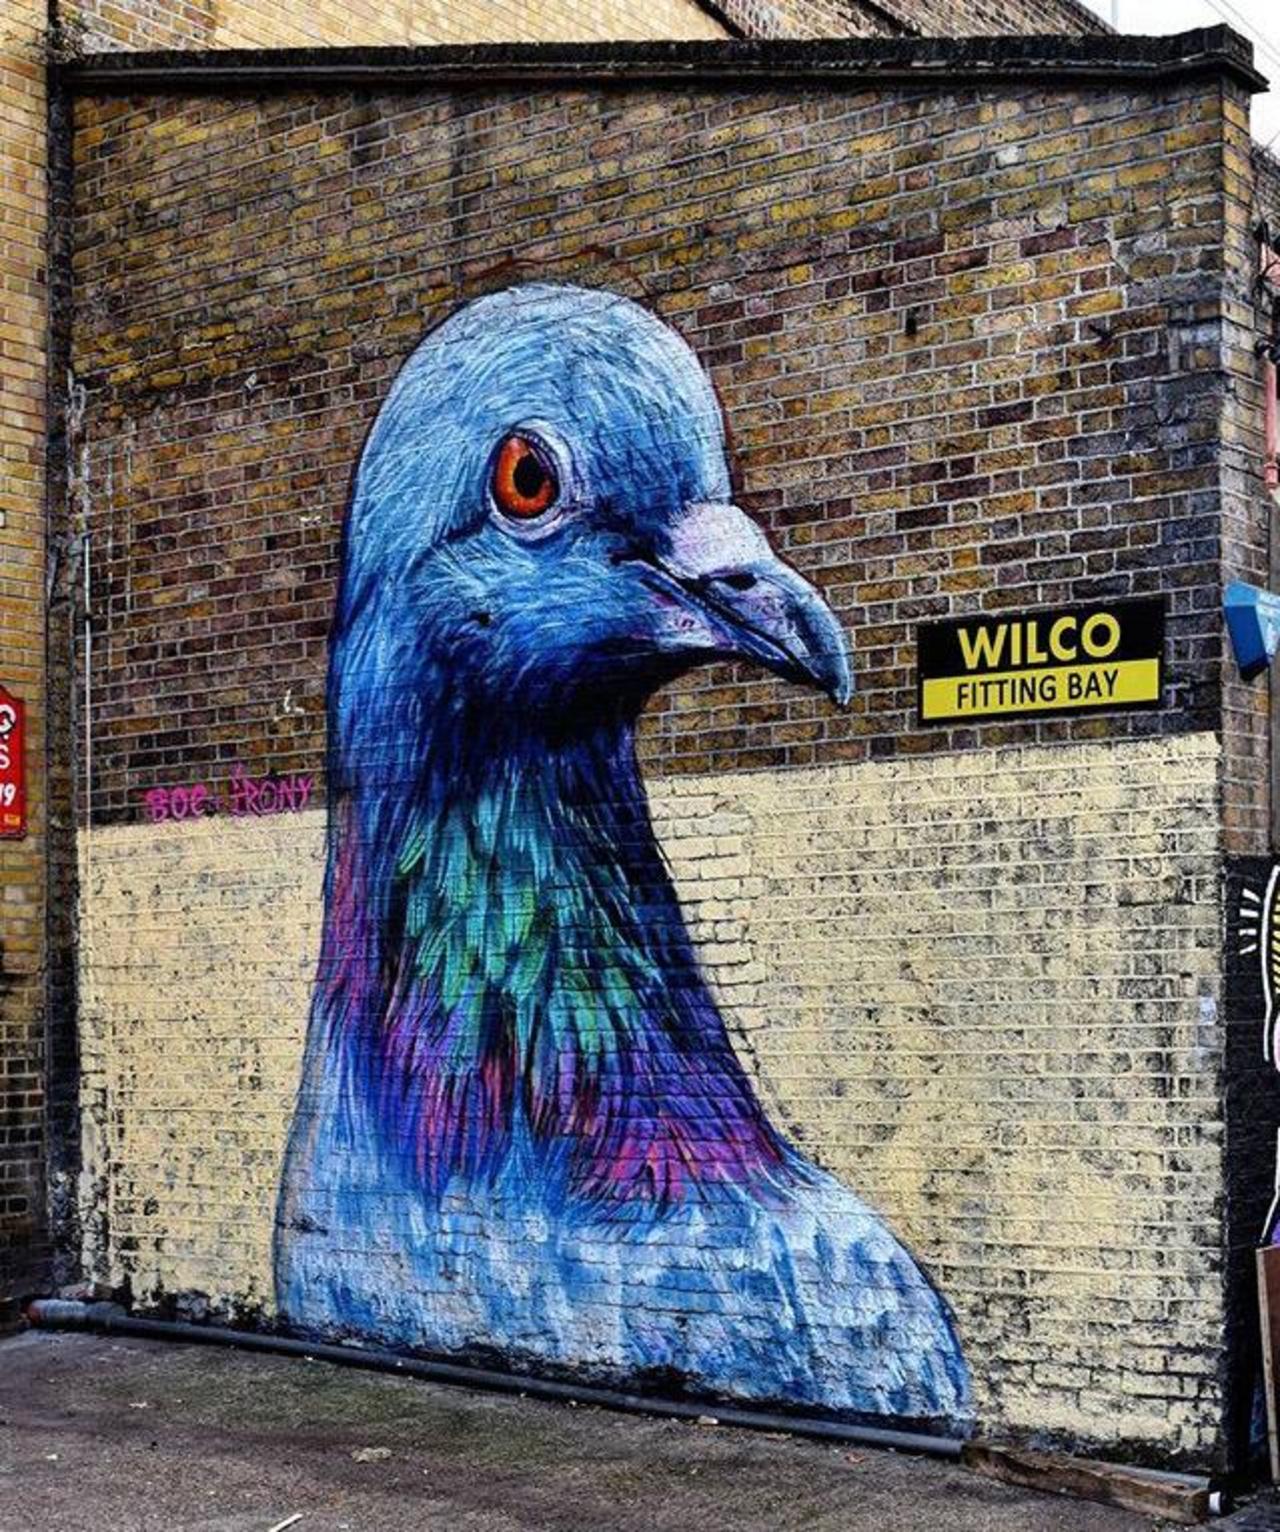 Street Art by Placee Boe & whoamirony in London 

#art #graffiti #mural #streetart http://t.co/W9tz9bzS0N